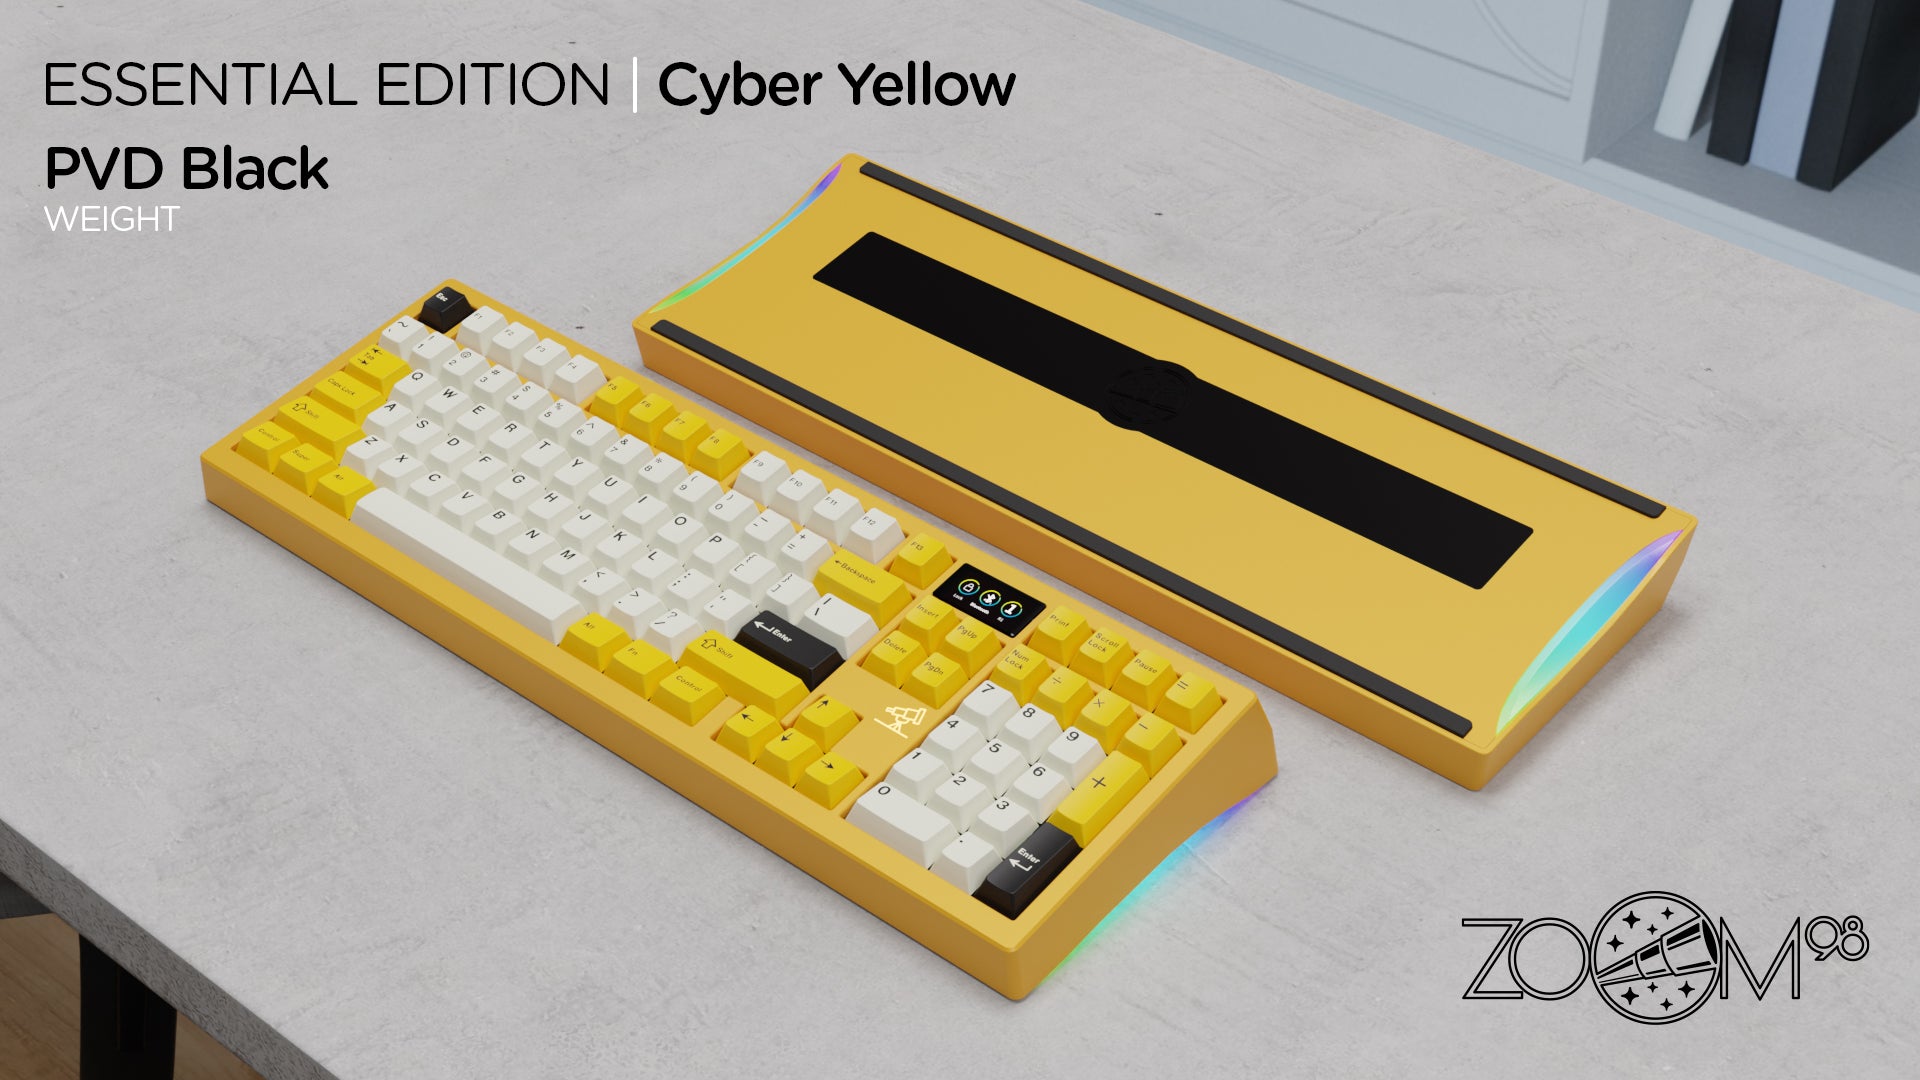 Zoom98 EE Cyber Yellow